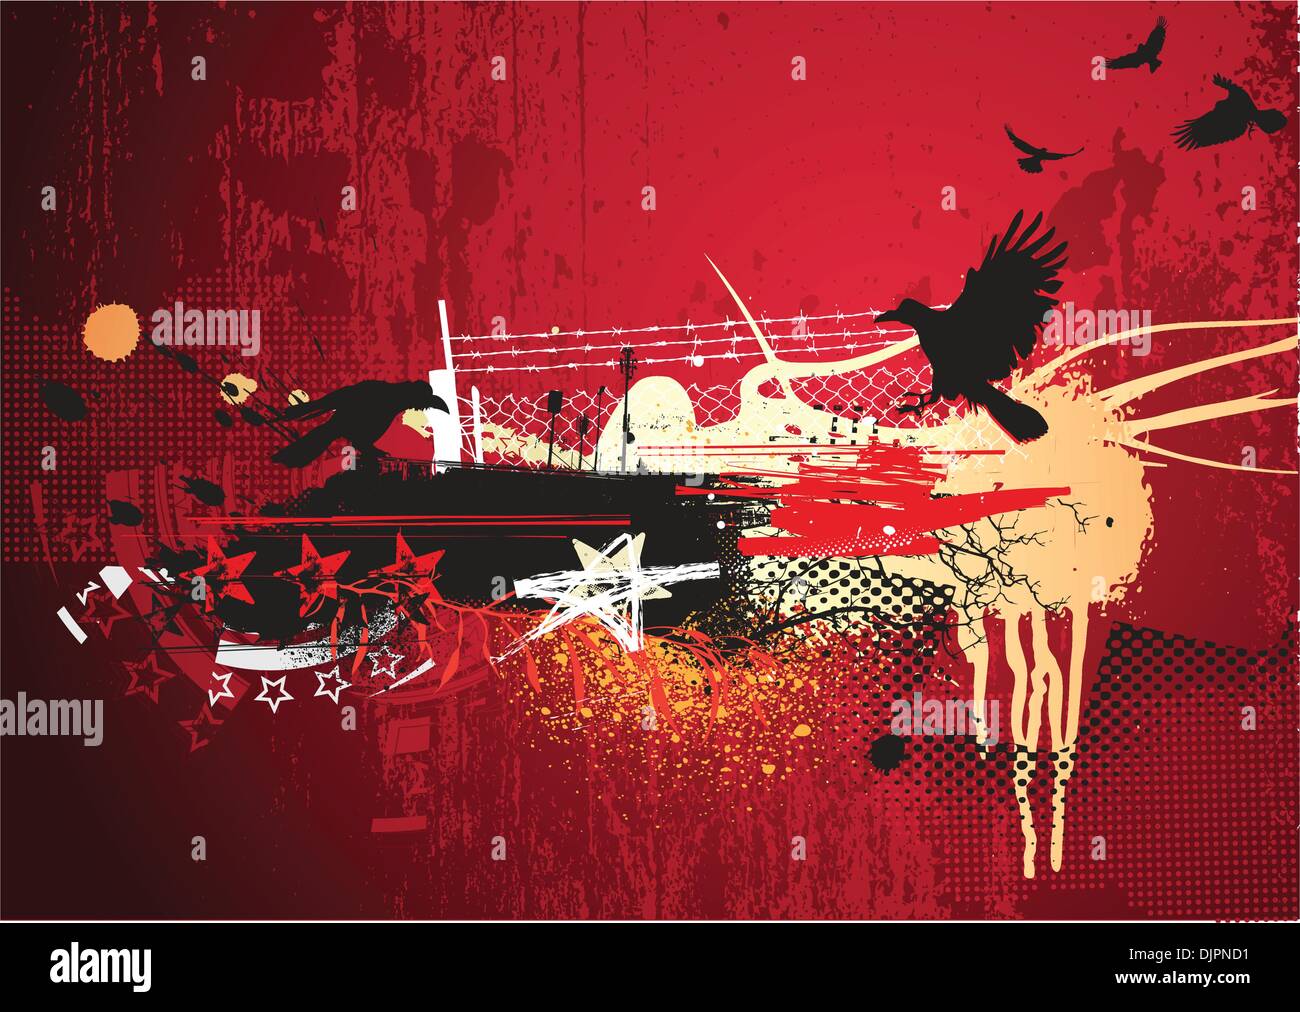 Illustration Vecteur de fond urbain abstrait rouge avec des éléments de conception grunge Illustration de Vecteur